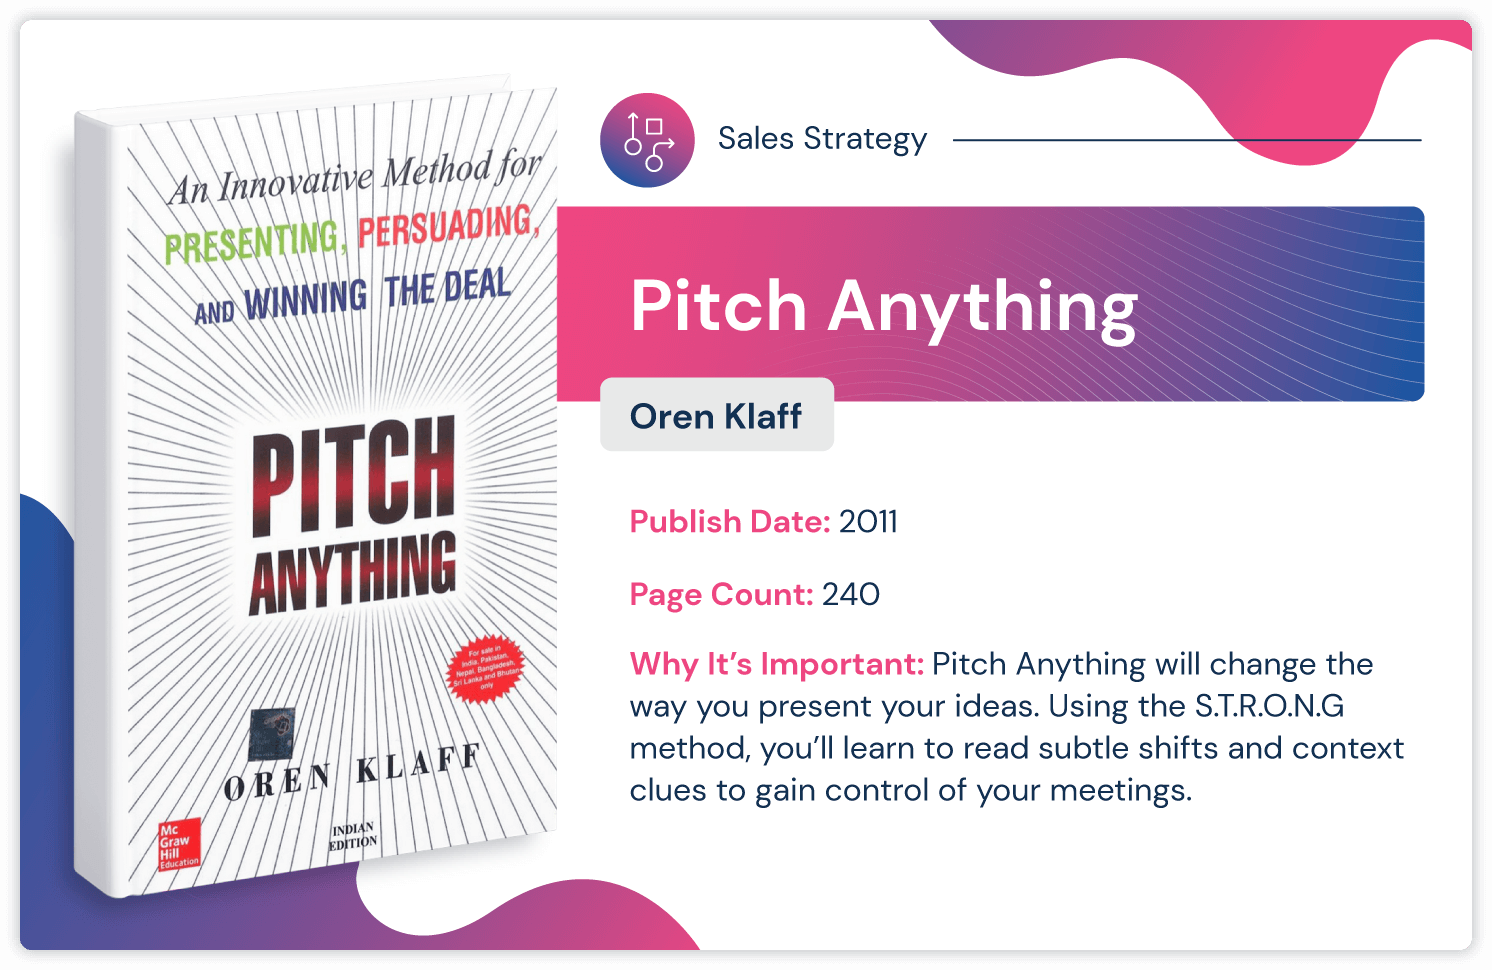 Cartea de strategie de vânzări „Pitch Anything” de Oren Klaff, publicată în 2011 și cu o lungime de 240 de pagini.